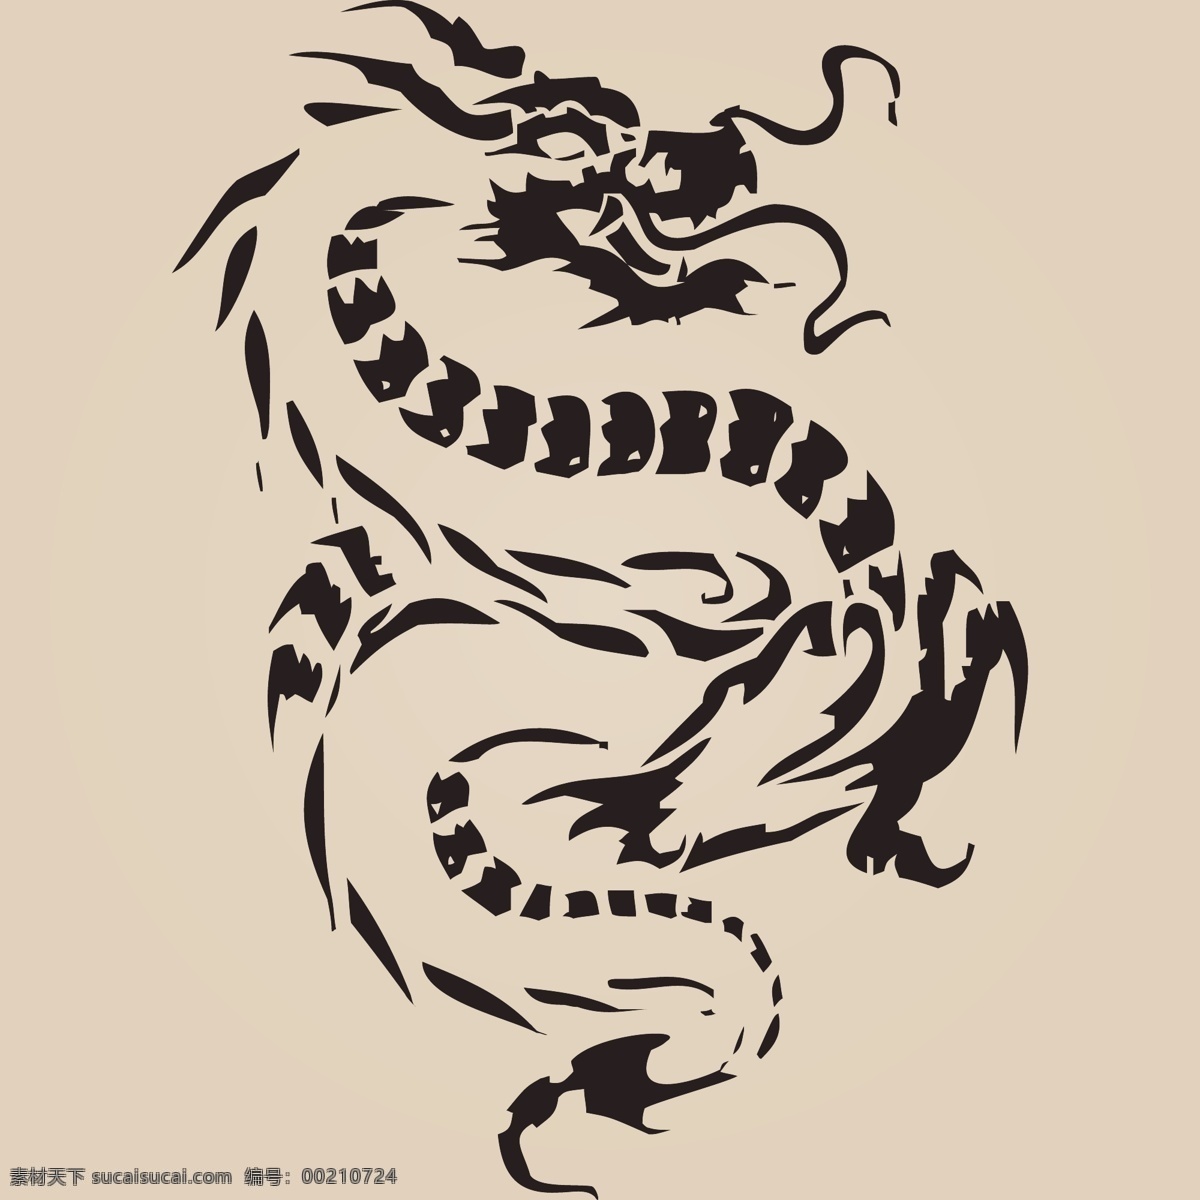 中国 龙 神龙 矢量 中国龙神龙 矢量素材 中国龙 纹身 龙纹身 龙矢量素材 五爪金龙 文化艺术 传统文化